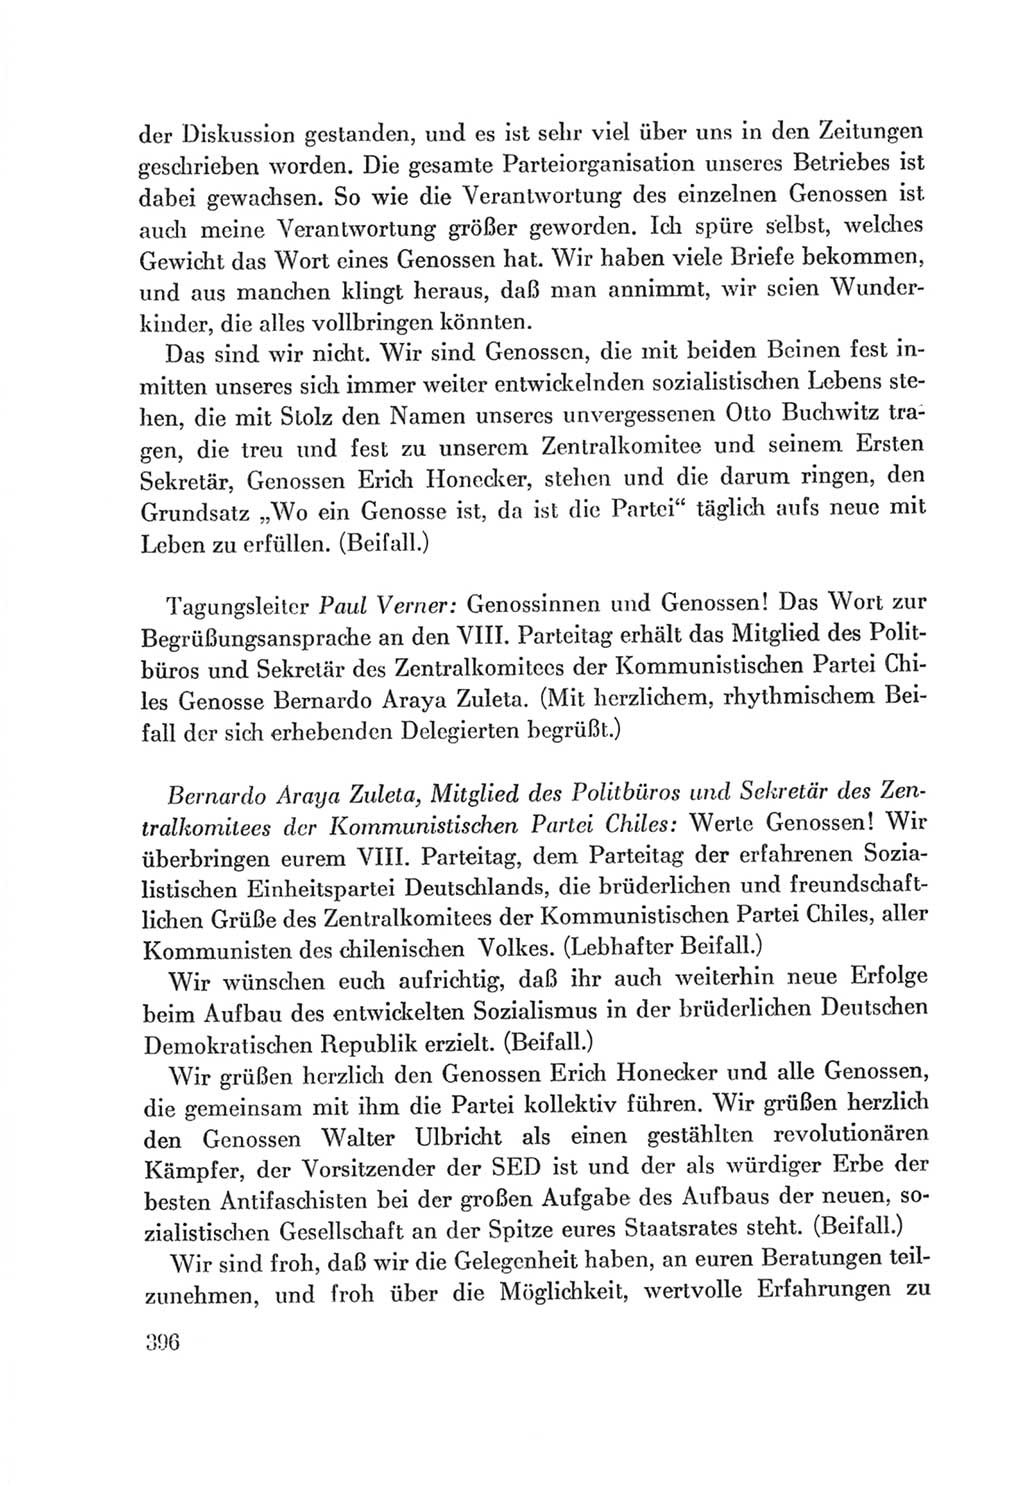 Protokoll der Verhandlungen des Ⅷ. Parteitages der Sozialistischen Einheitspartei Deutschlands (SED) [Deutsche Demokratische Republik (DDR)] 1971, Band 1, Seite 396 (Prot. Verh. Ⅷ. PT SED DDR 1971, Bd. 1, S. 396)